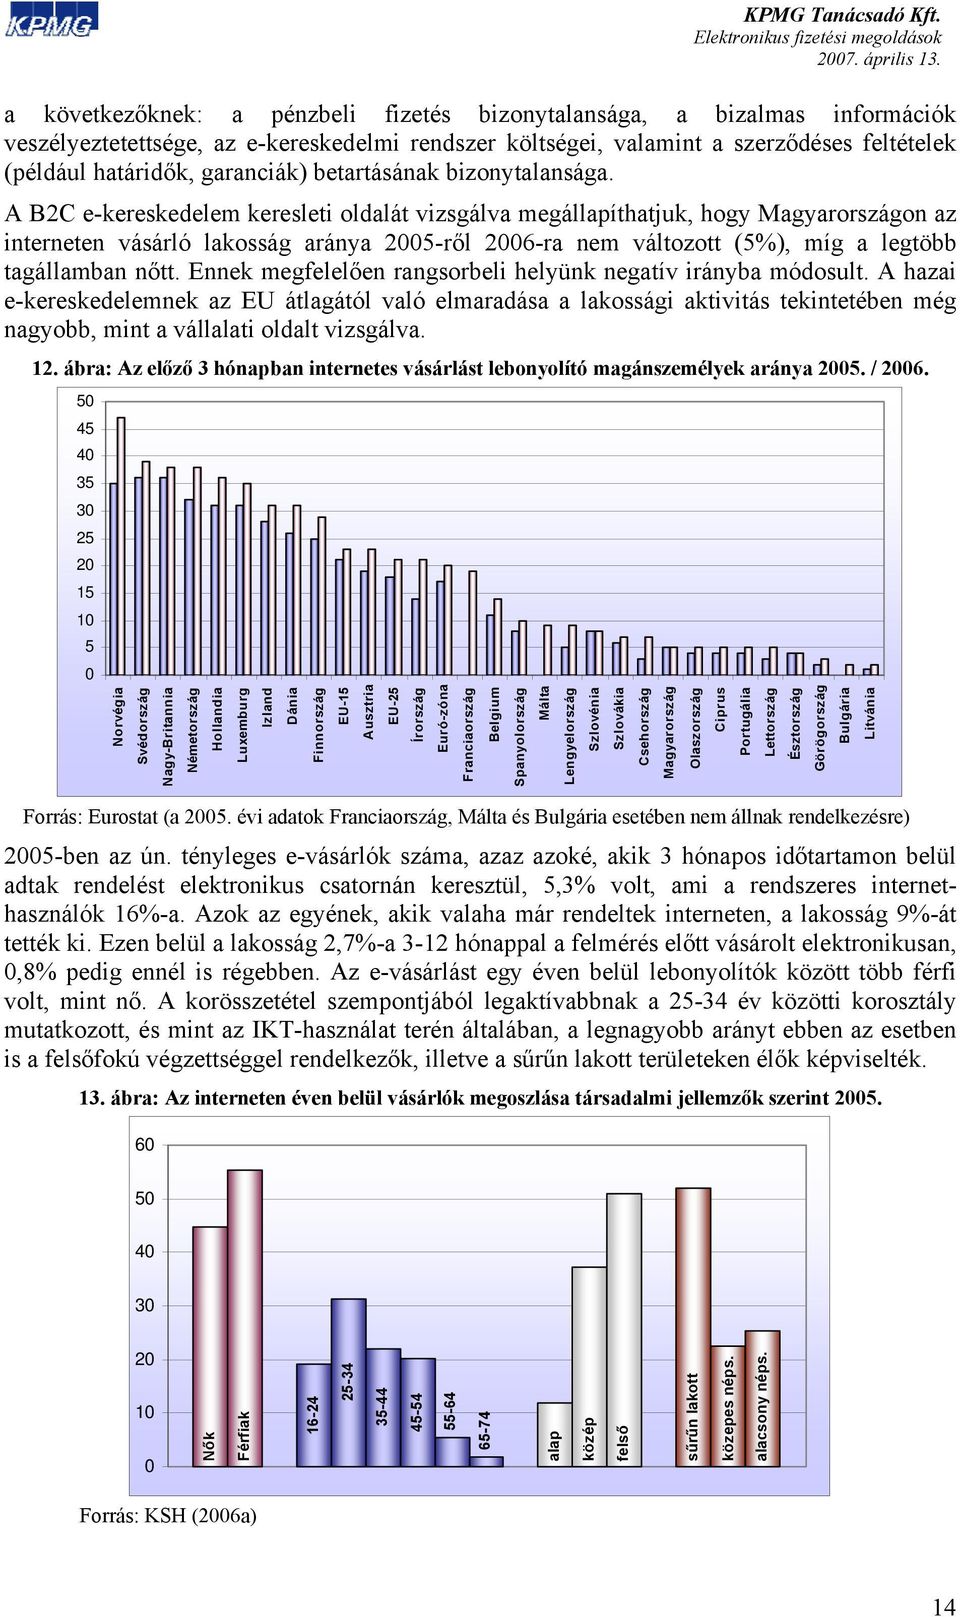 A B2C e-kereskedelem keresleti oldalát vizsgálva megállapíthatjuk, hogy Magyarországon az interneten vásárló lakosság aránya 2005-ről 2006-ra nem változott (5%), míg a legtöbb tagállamban nőtt.